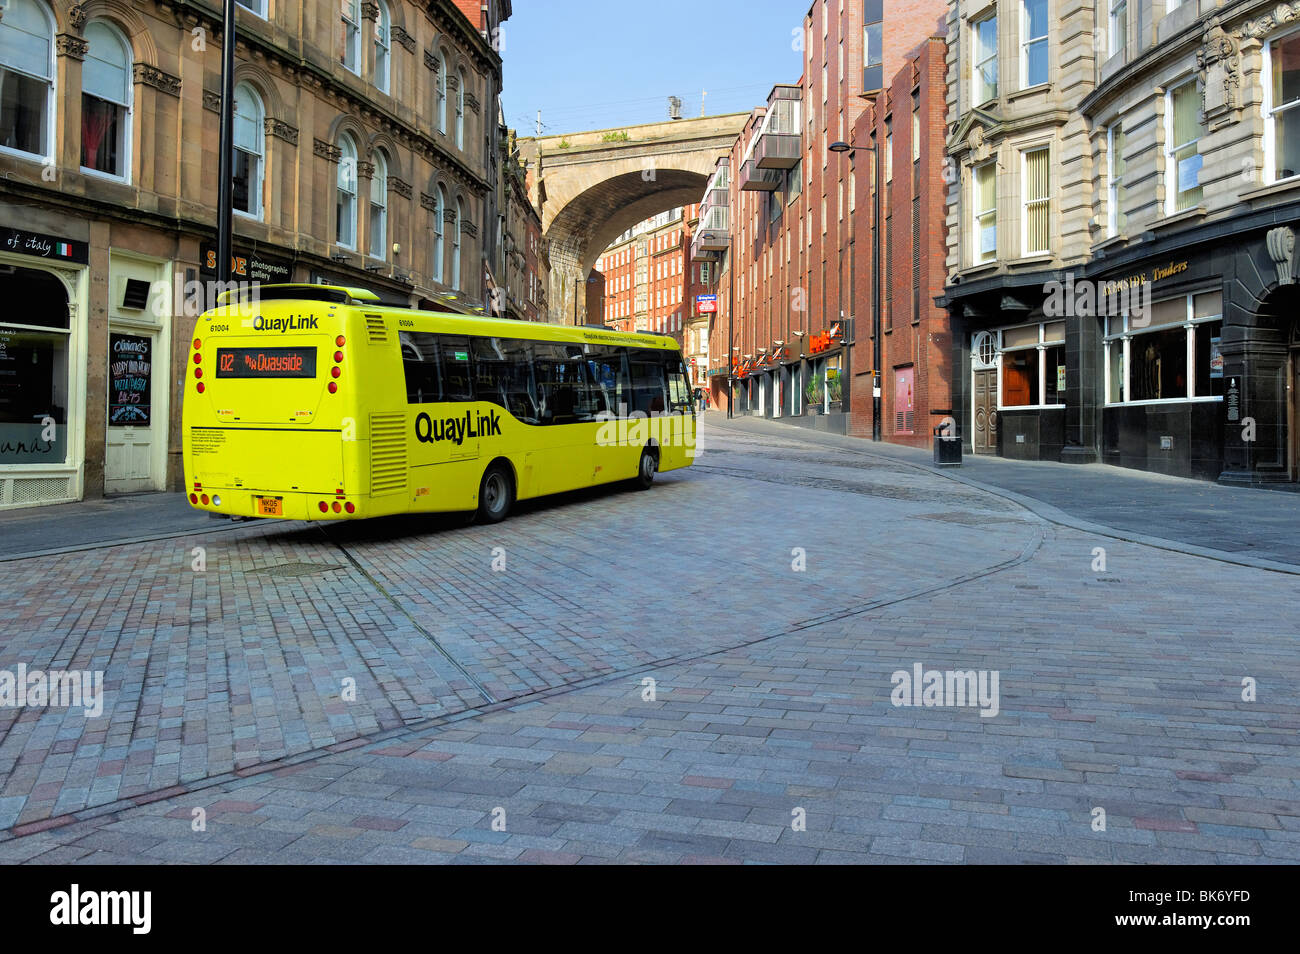 Bus QuayLink la position sur la colline à côté menant vers Dean Street, Newcastle-upon-Tyne Banque D'Images